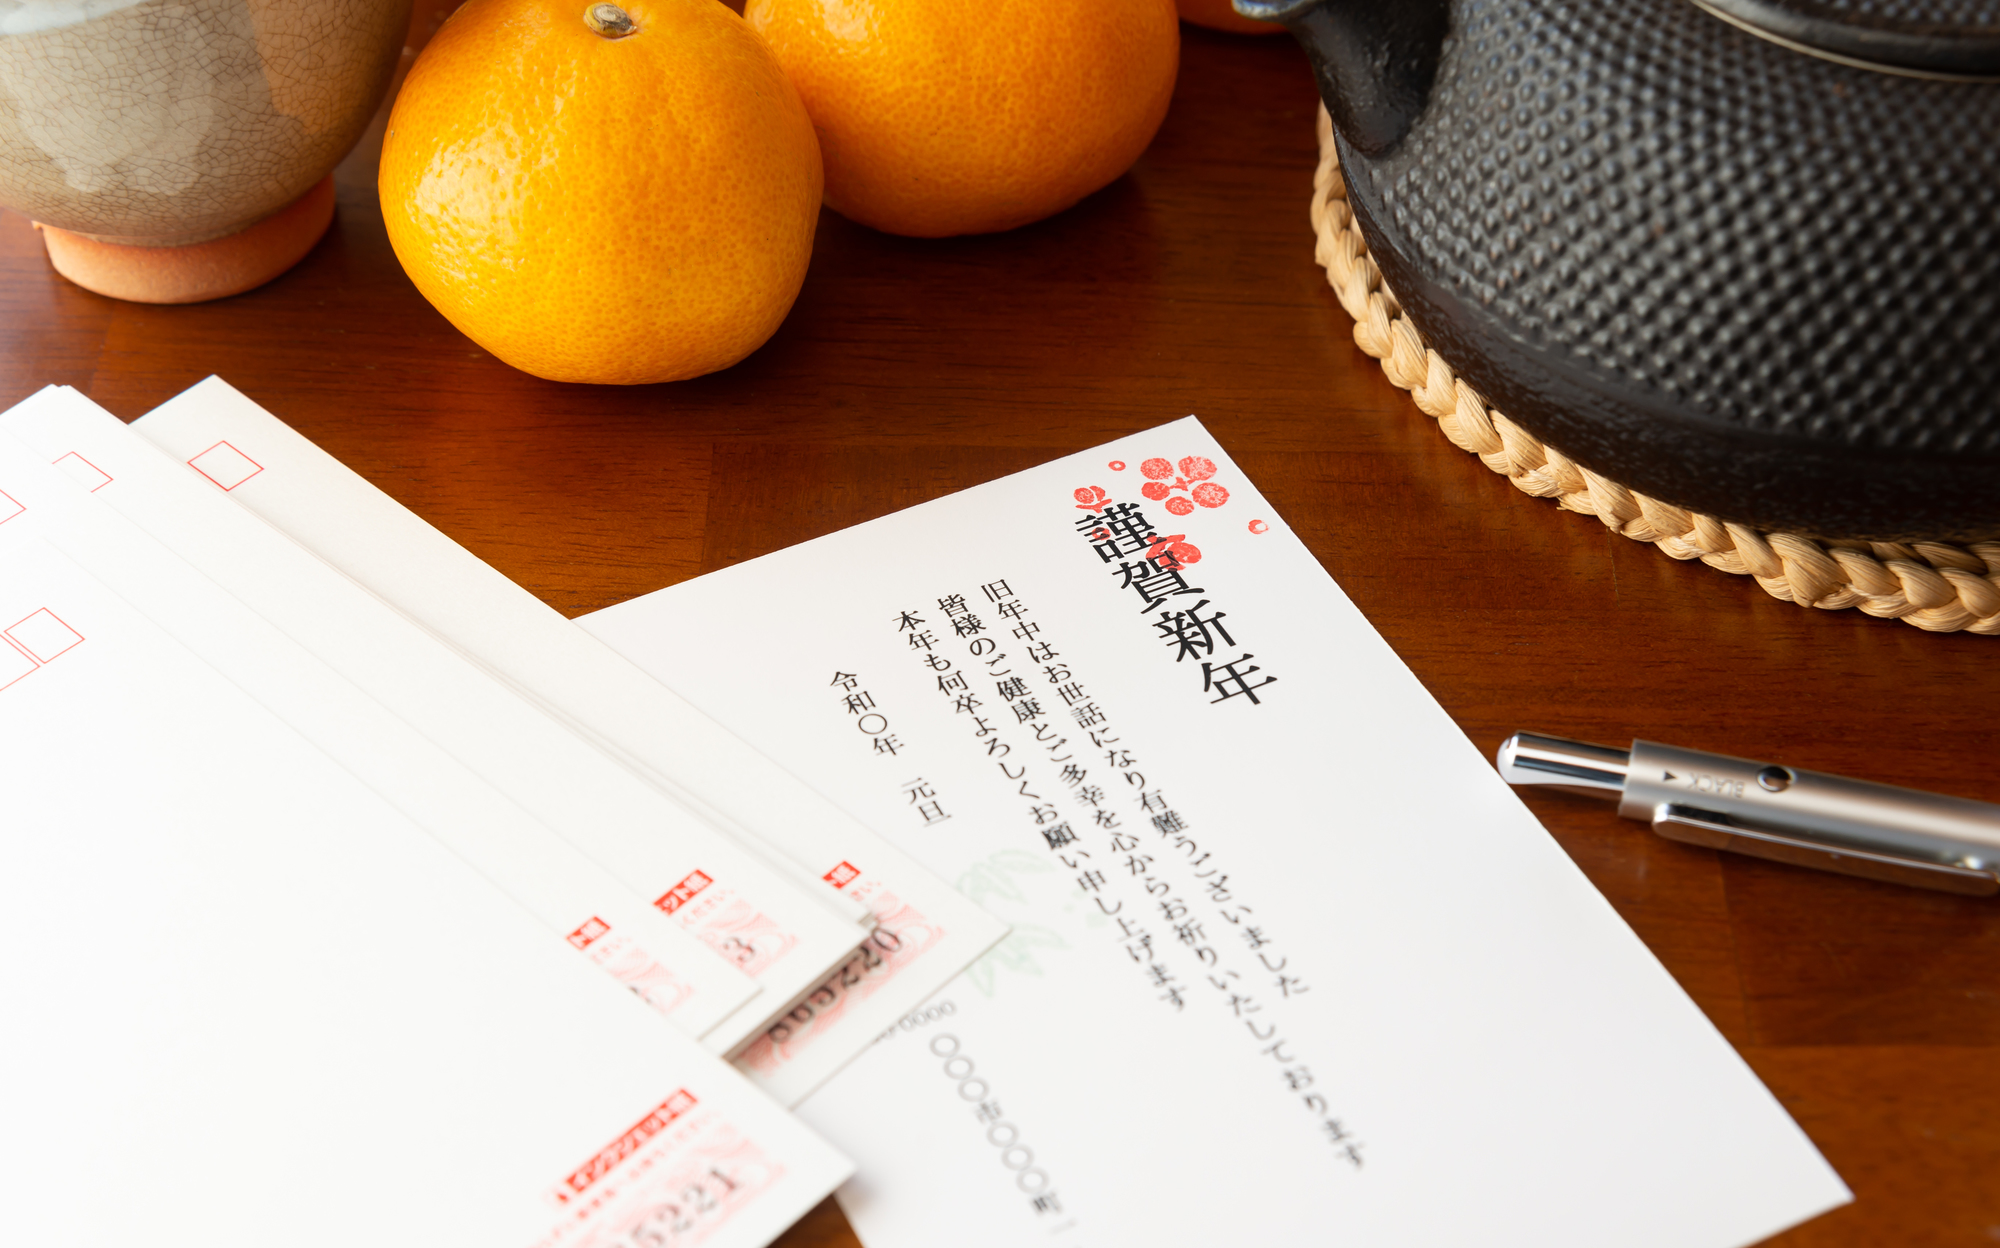 日式新年的老派浪漫2 App自製年賀狀教學 國內外郵寄方式 Tsunagu Local